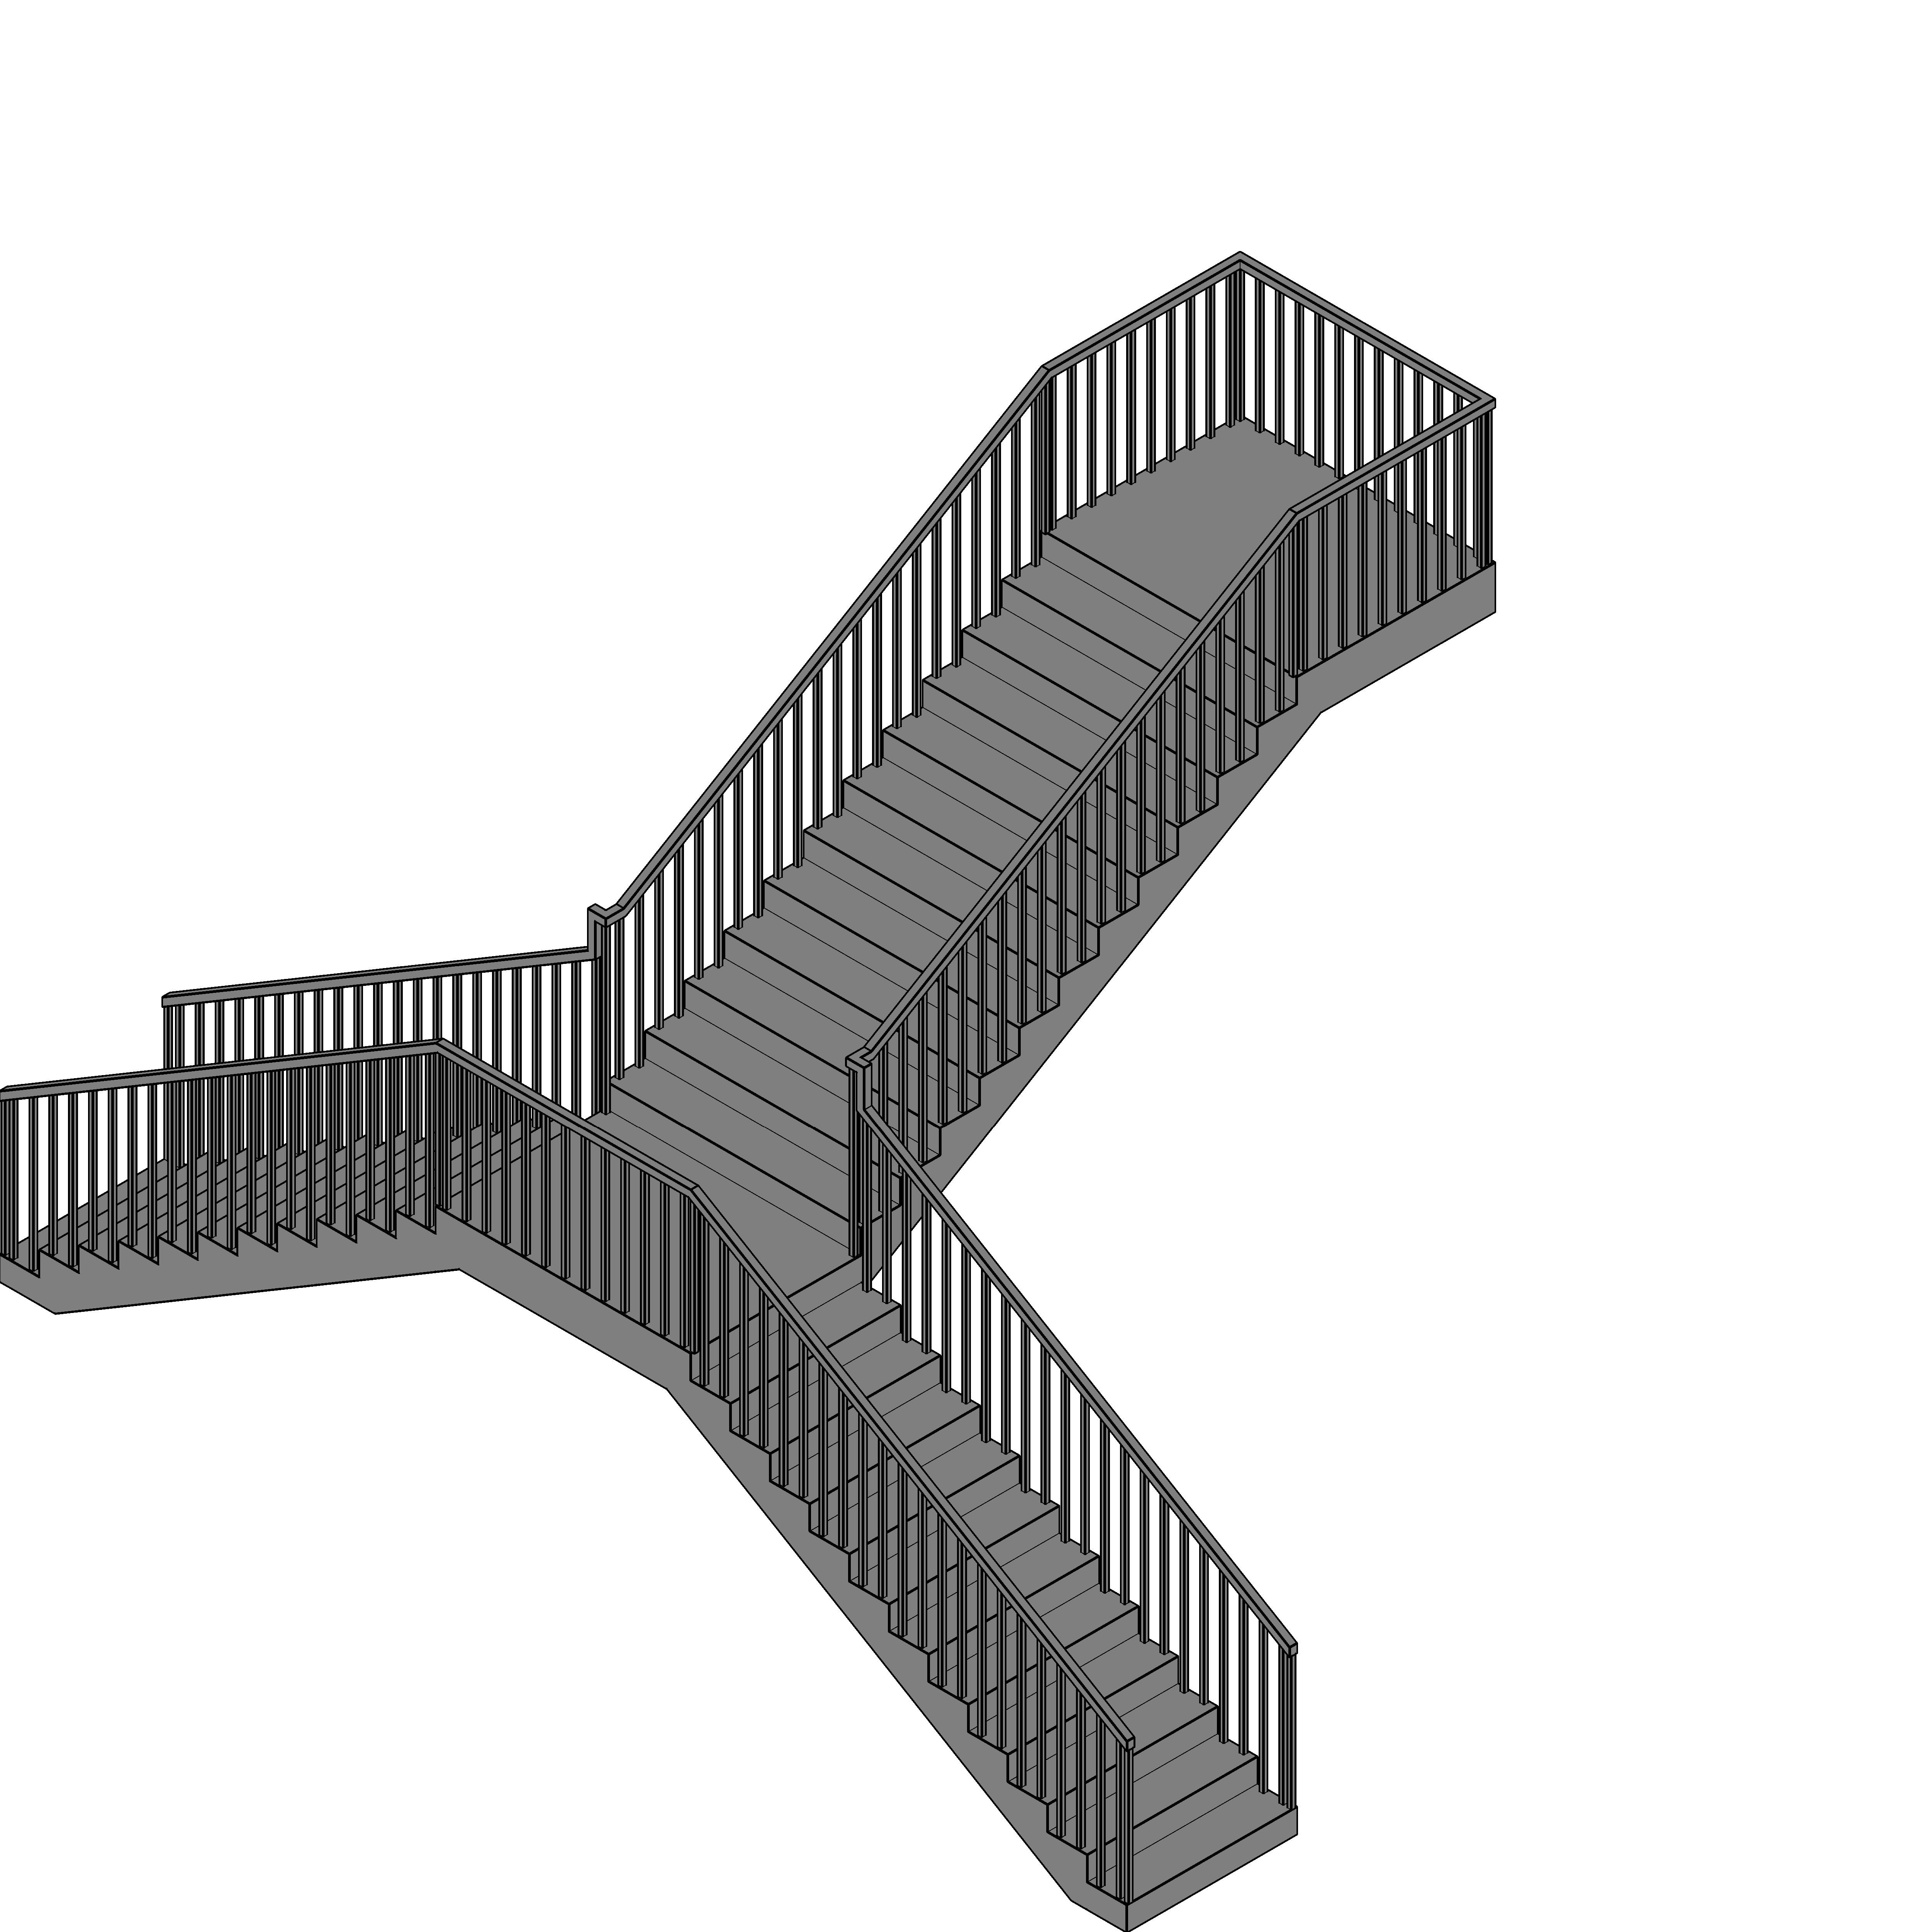 3d立体梯子的画法图片